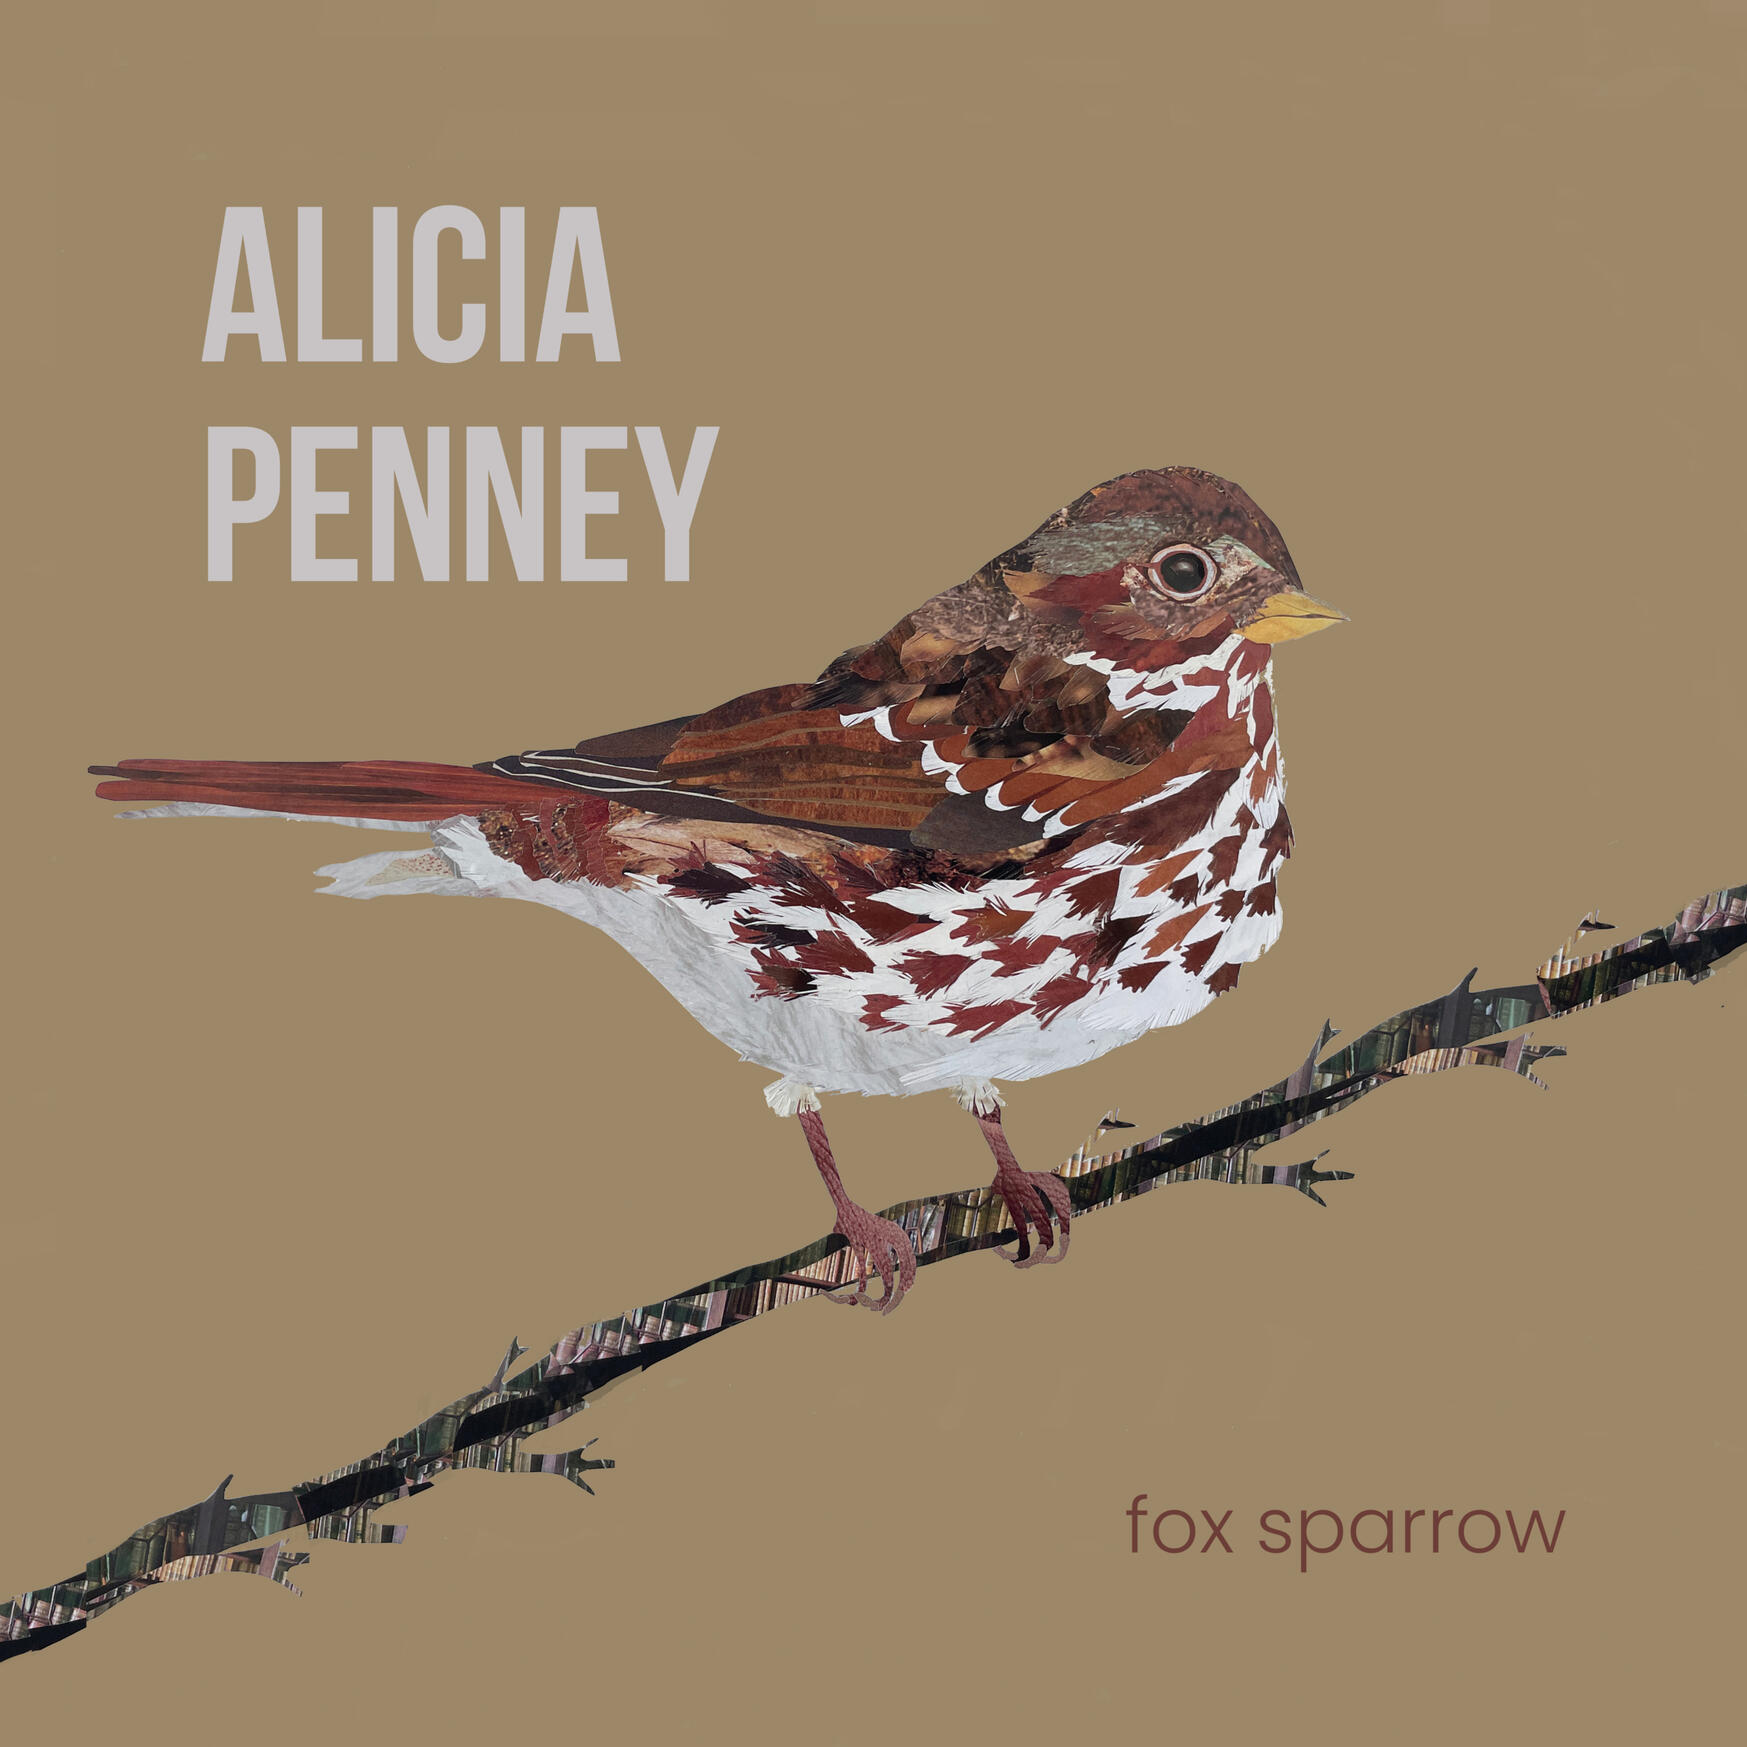 fox sparrow album artwork